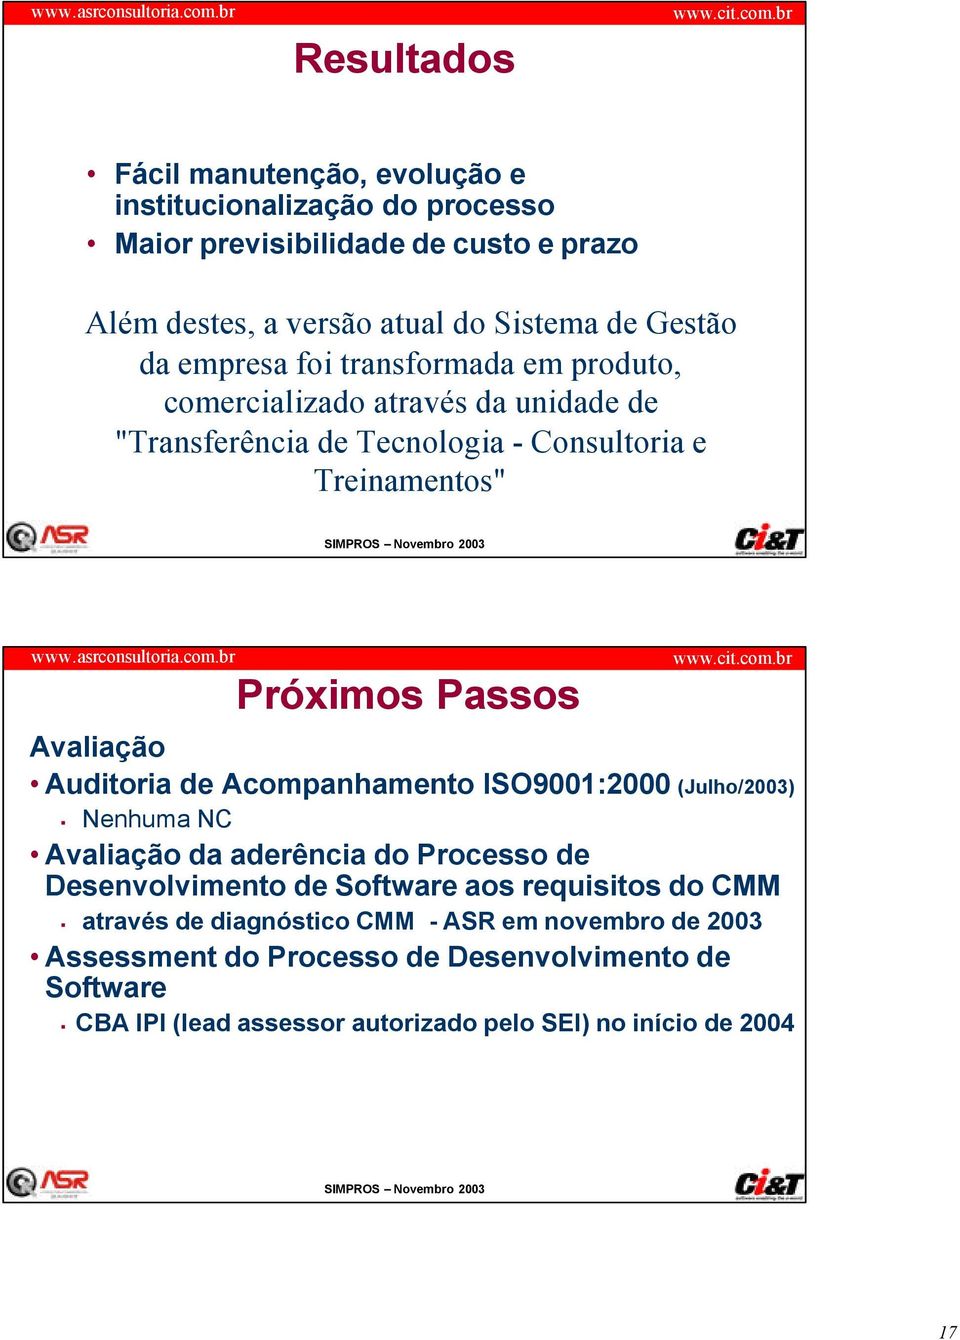 Auditoria de Acompanhamento ISO9001:2000 (Julho/2003) Nenhuma NC Avaliação da aderência do Processo de Desenvolvimento de Software aos requisitos do CMM através